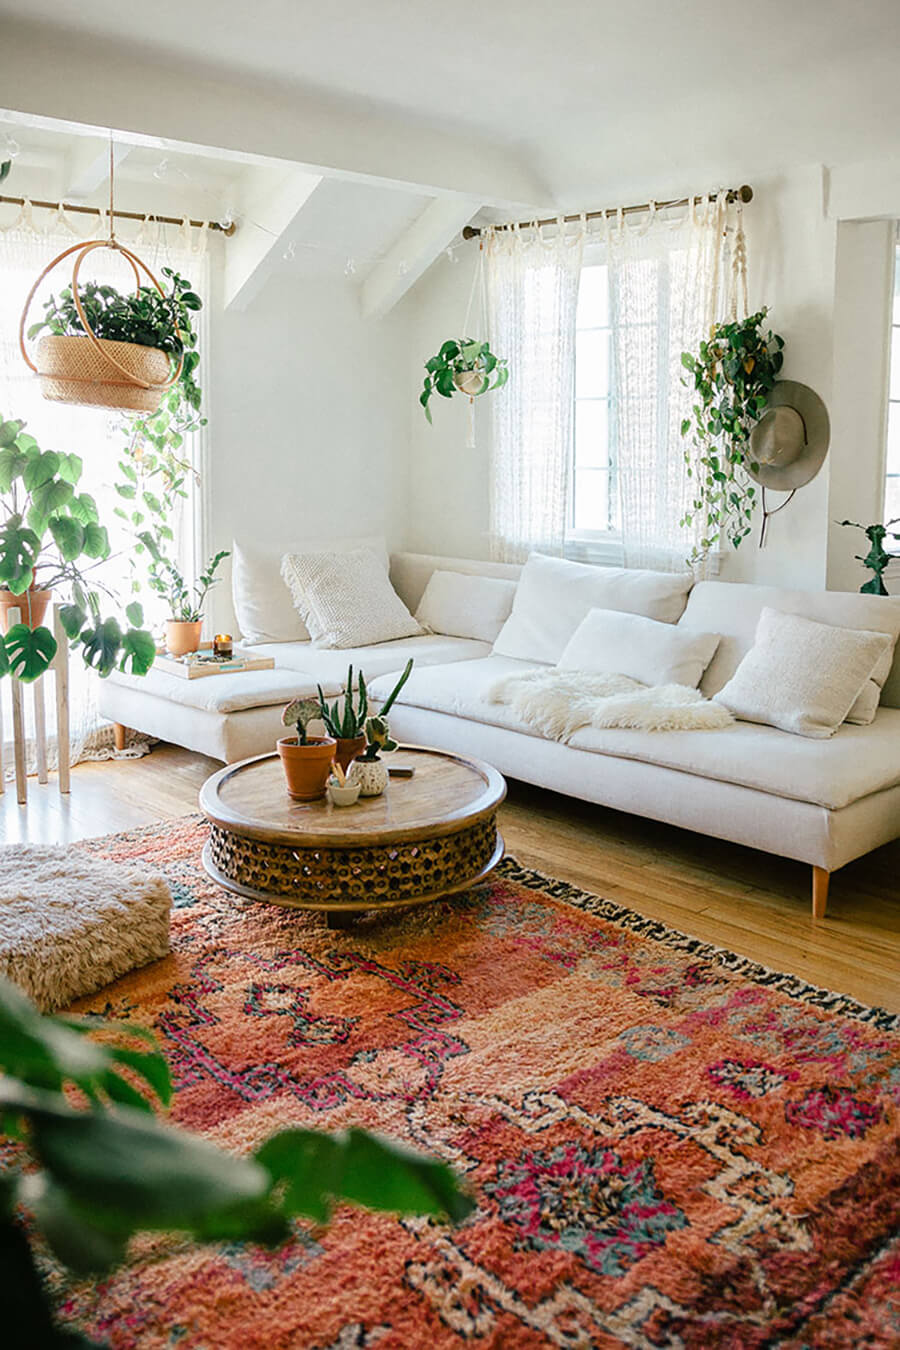 un living moderno con textiles de materiales naturales, una mesa de centro circular, muebles de tonos neutros y plantas